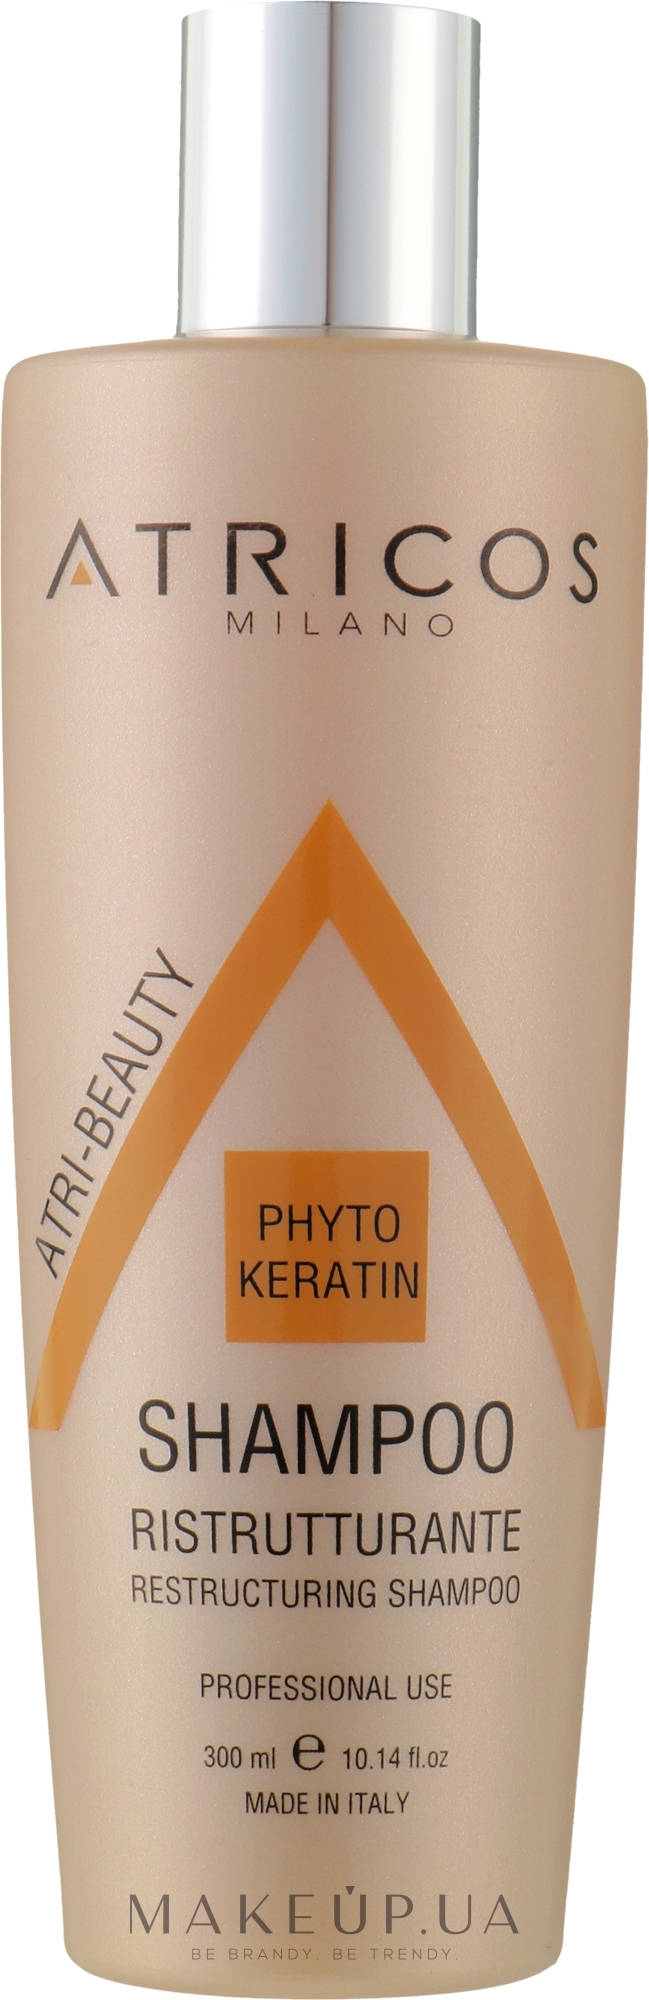 Шампунь з фітокератином для реструктуризації волосся - Atricos Phyto Keratin Restructuring Shampoo — фото 300ml